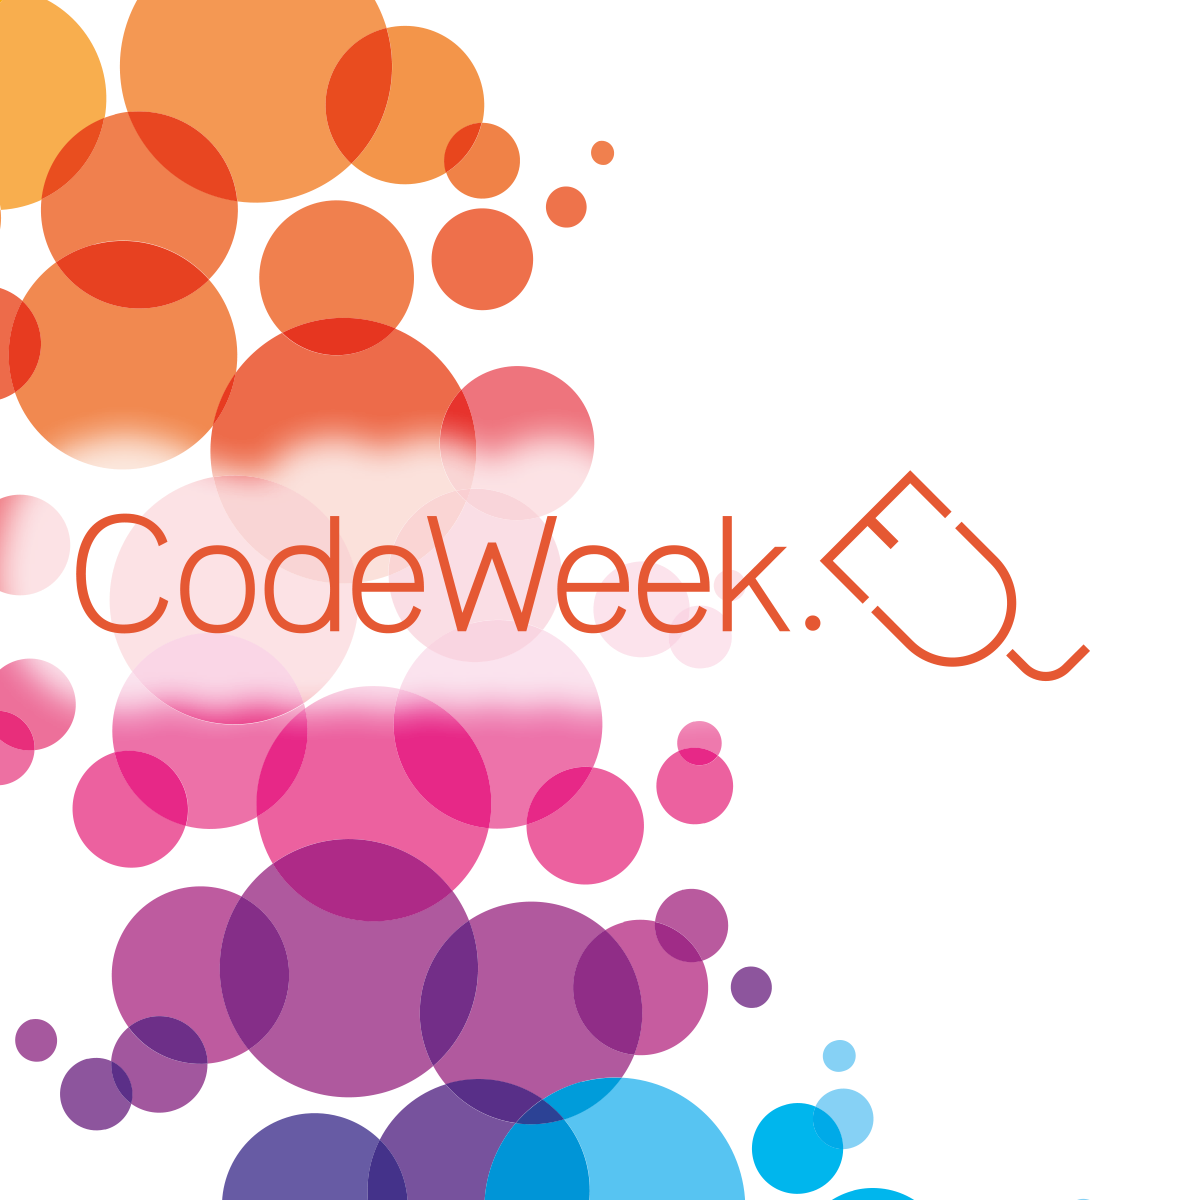 CodeWeek 2022 Ostoja Wrocław